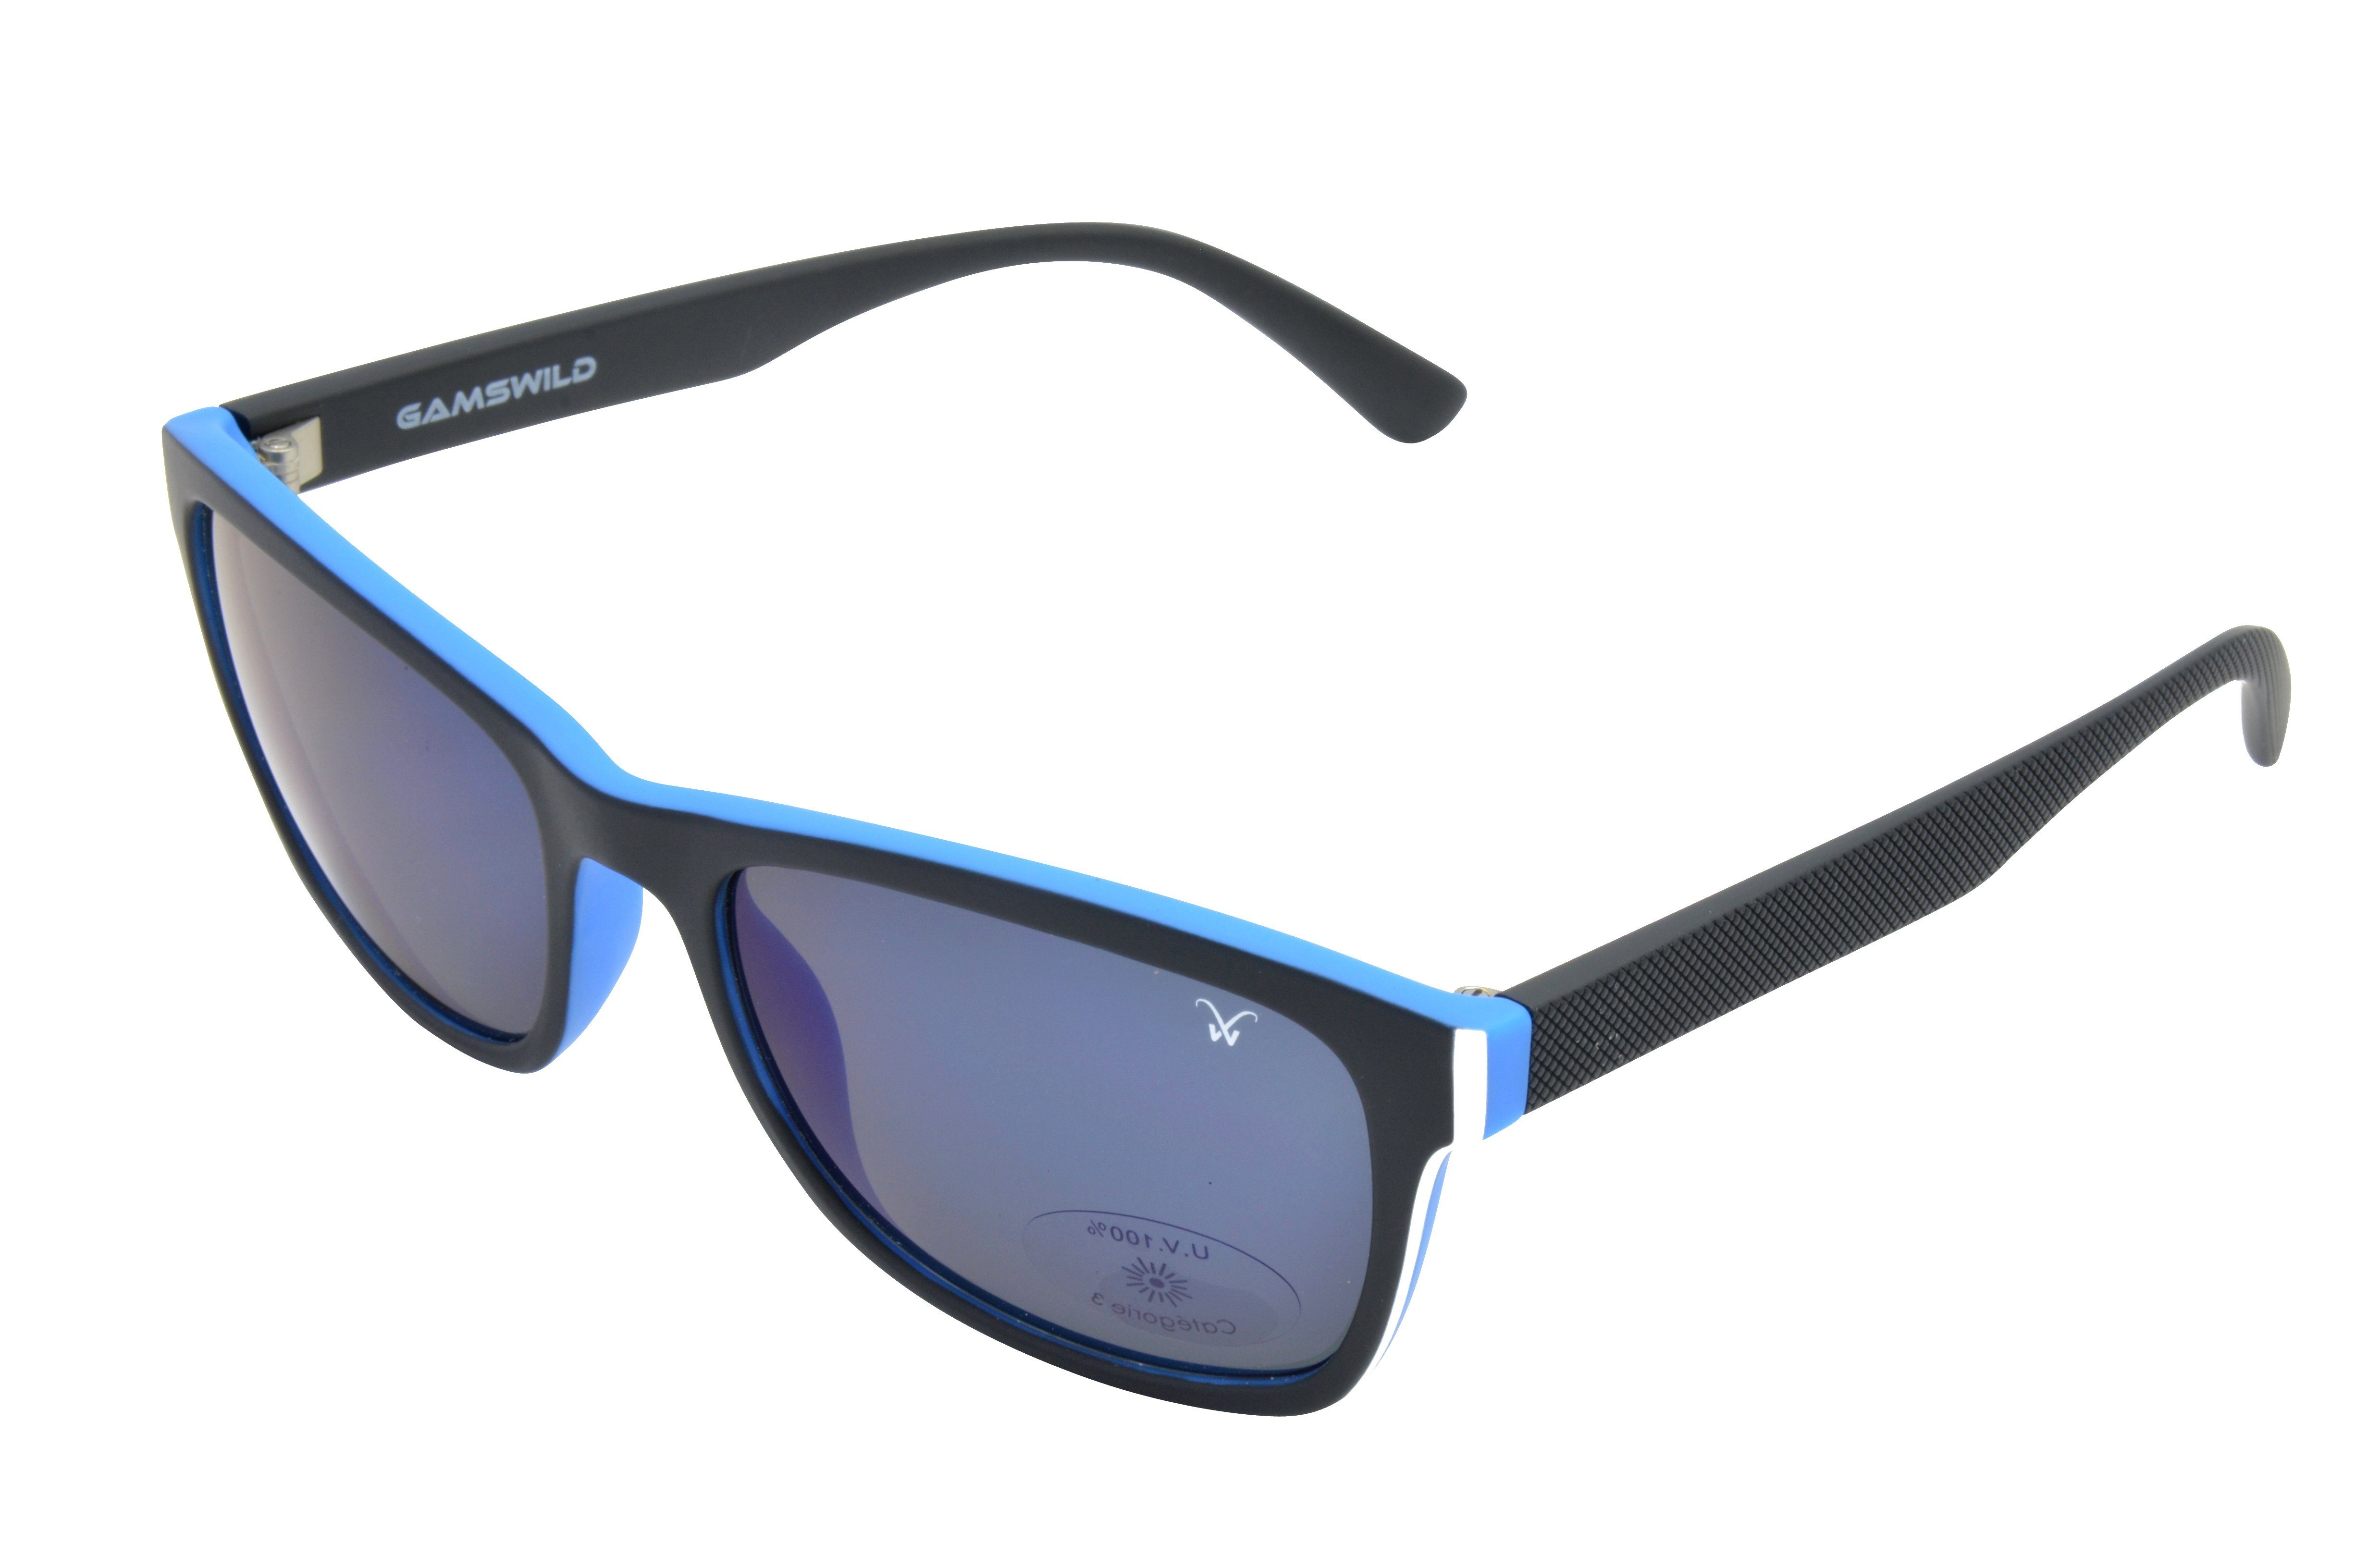 Gamswild Sonnenbrille WM7428 GAMSSTYLE Mode Brille Damen, blau, beige, schwarz-G15